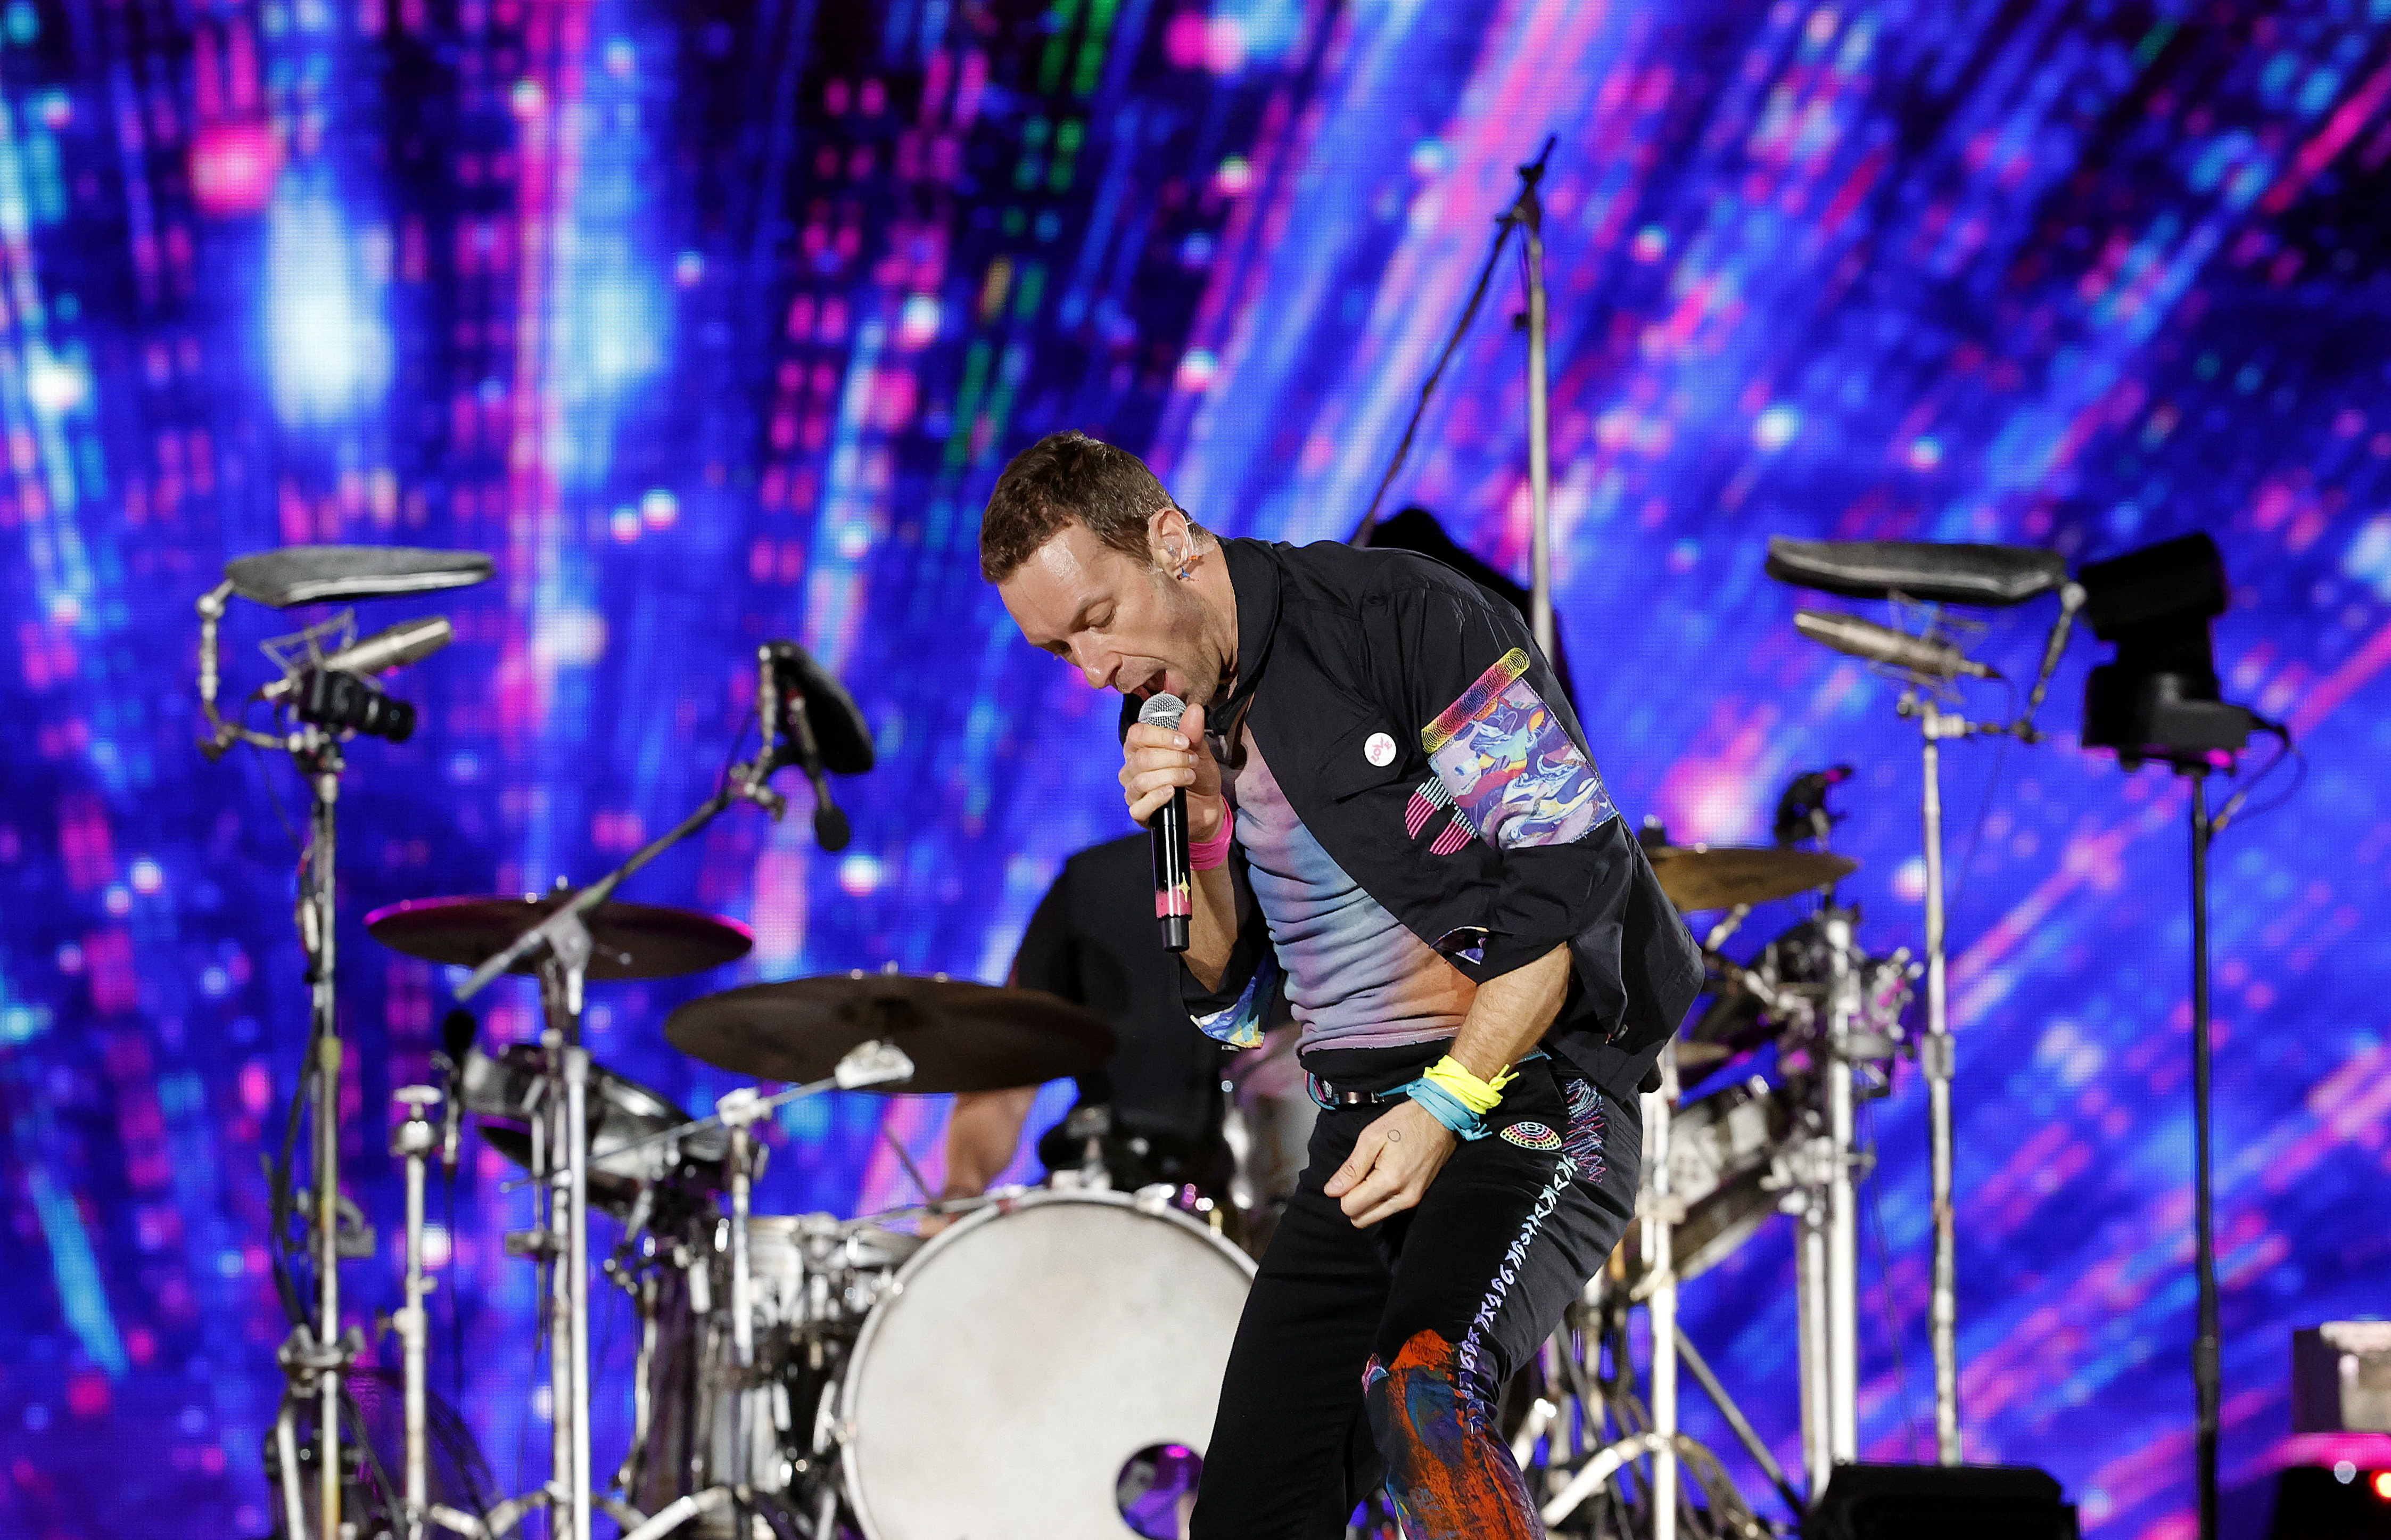  Chris Martin, vocalista de Coldplay, canta hoy durante un concierto de la banda británica en Bogotá (Colombia).  (Foto Prensa Libre: EFE/ Mauricio Dueñas Castañeda /SOLO USO EDITORIAL /NO VENTAS /NO ARCHIVO